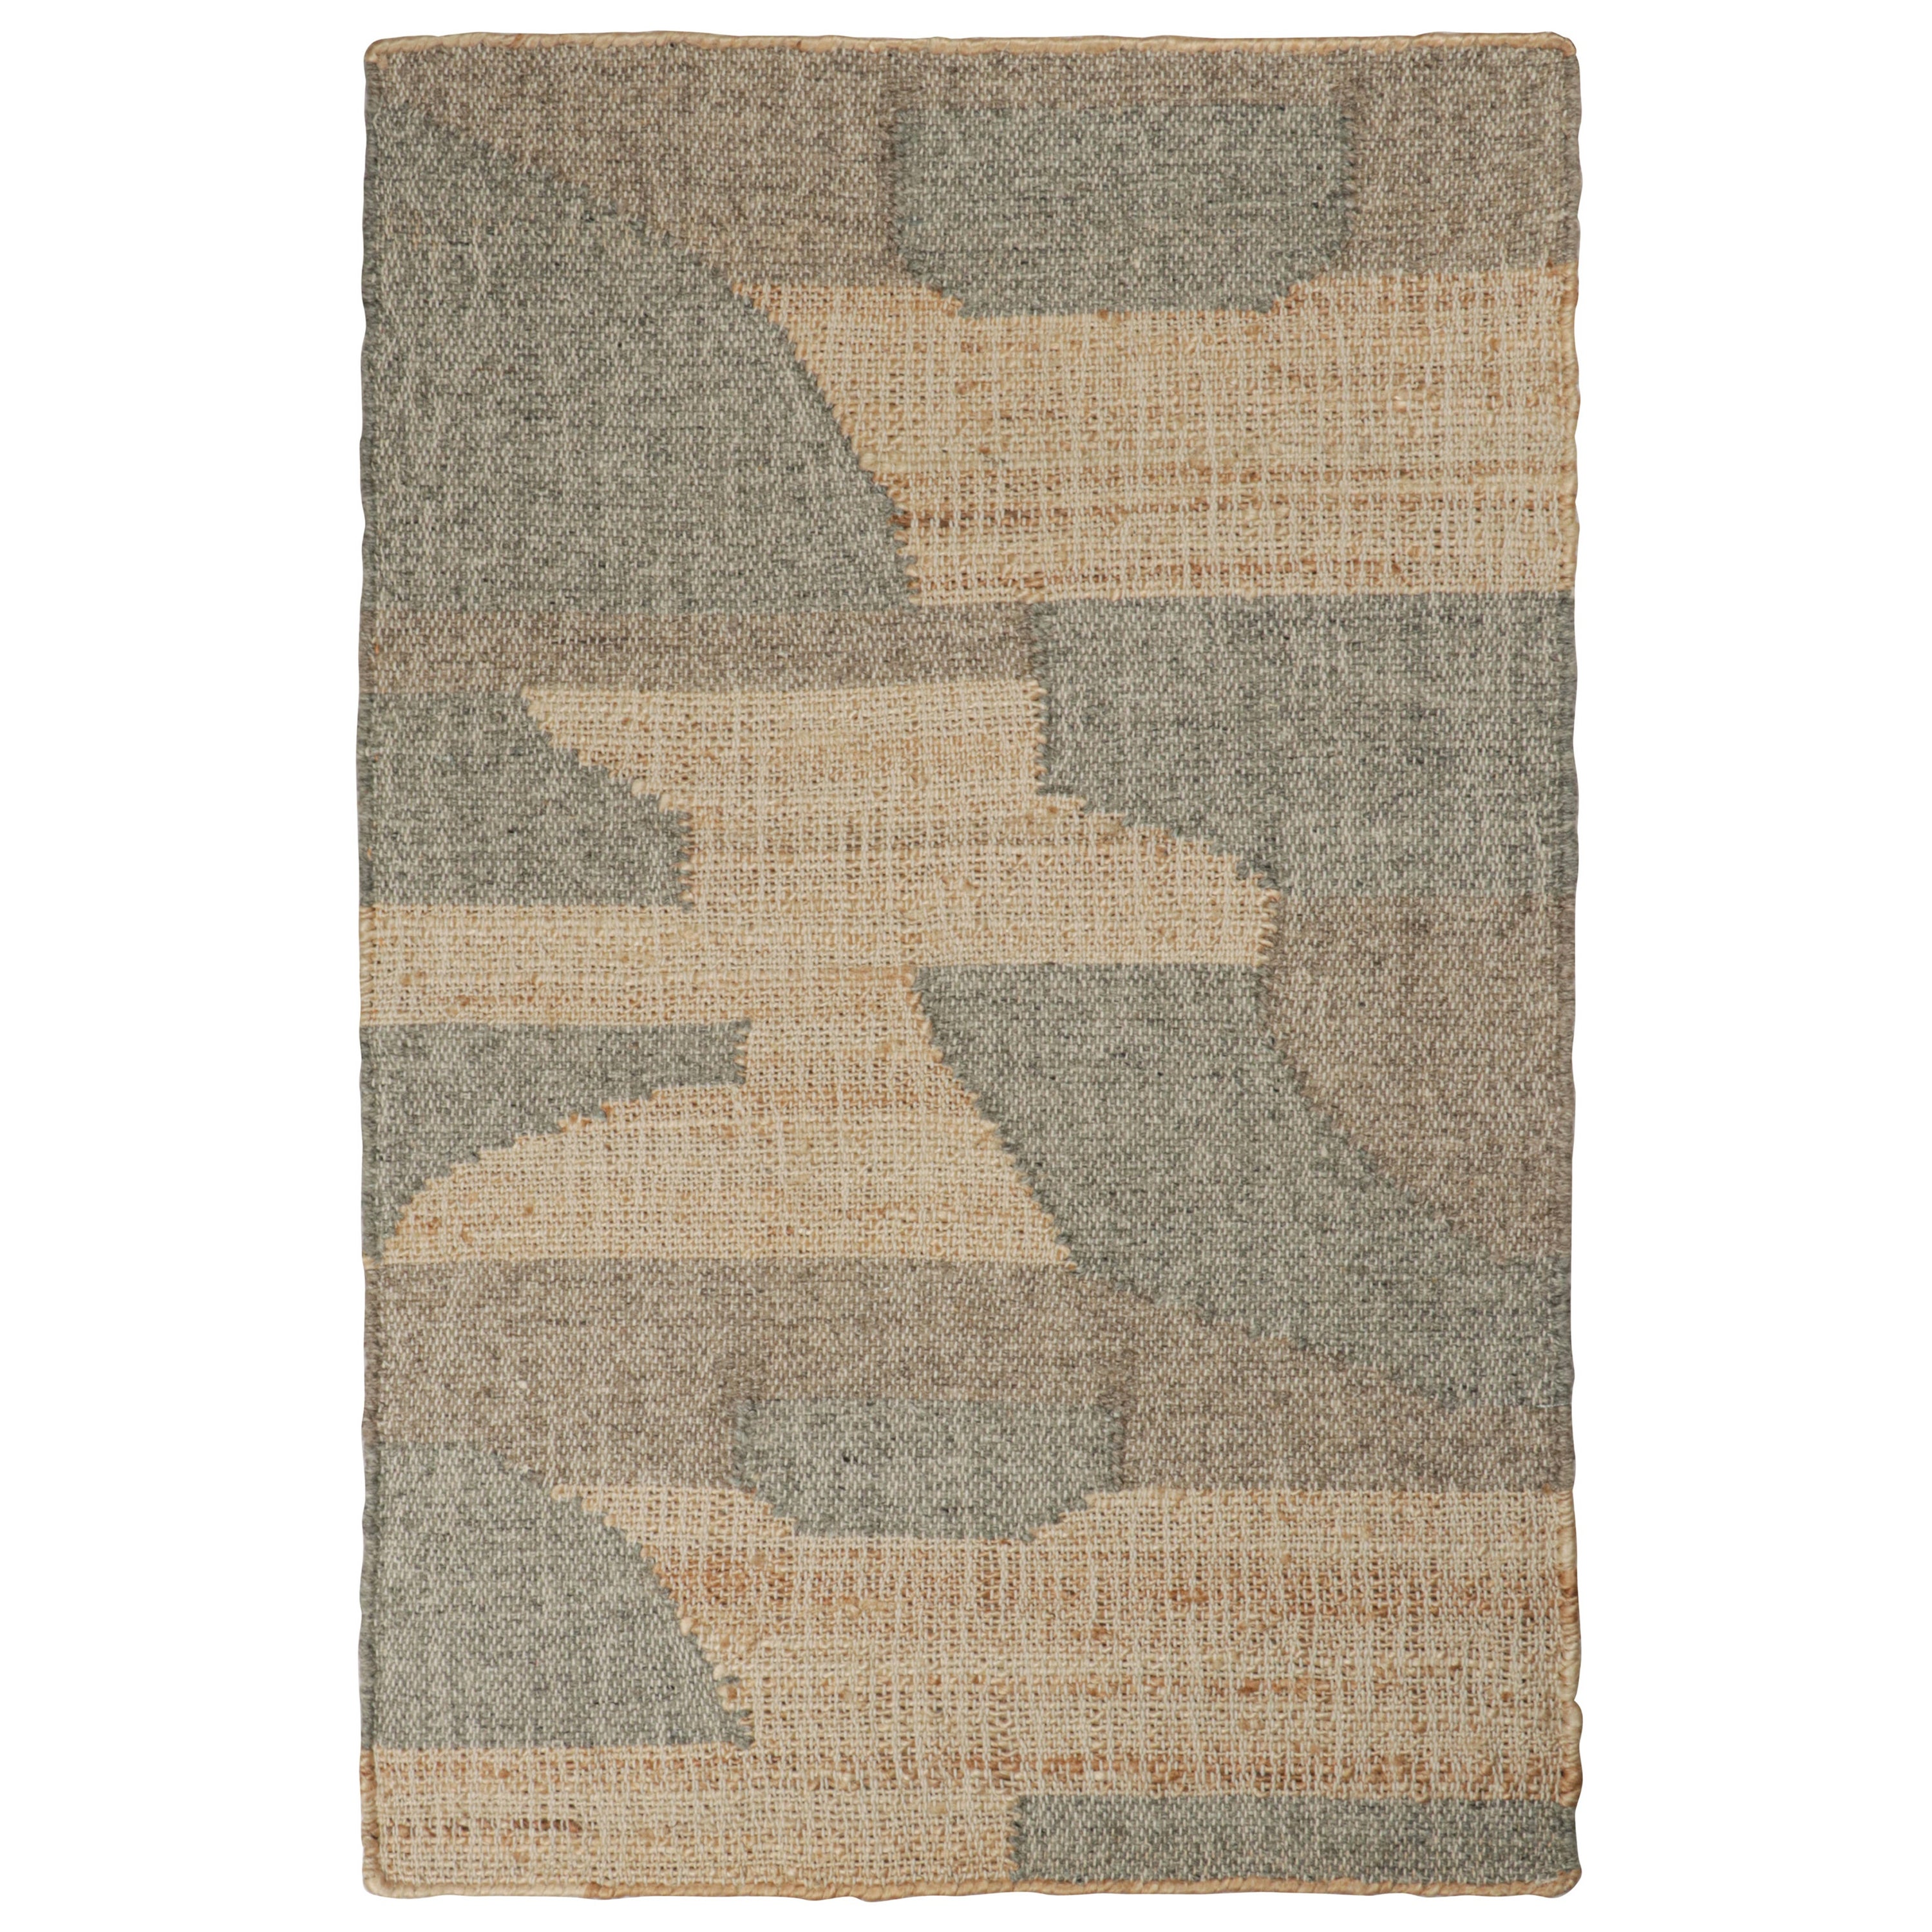 Rug & Kilim’s Modern Kilim rug in Beige-Brown & Grey Patterns